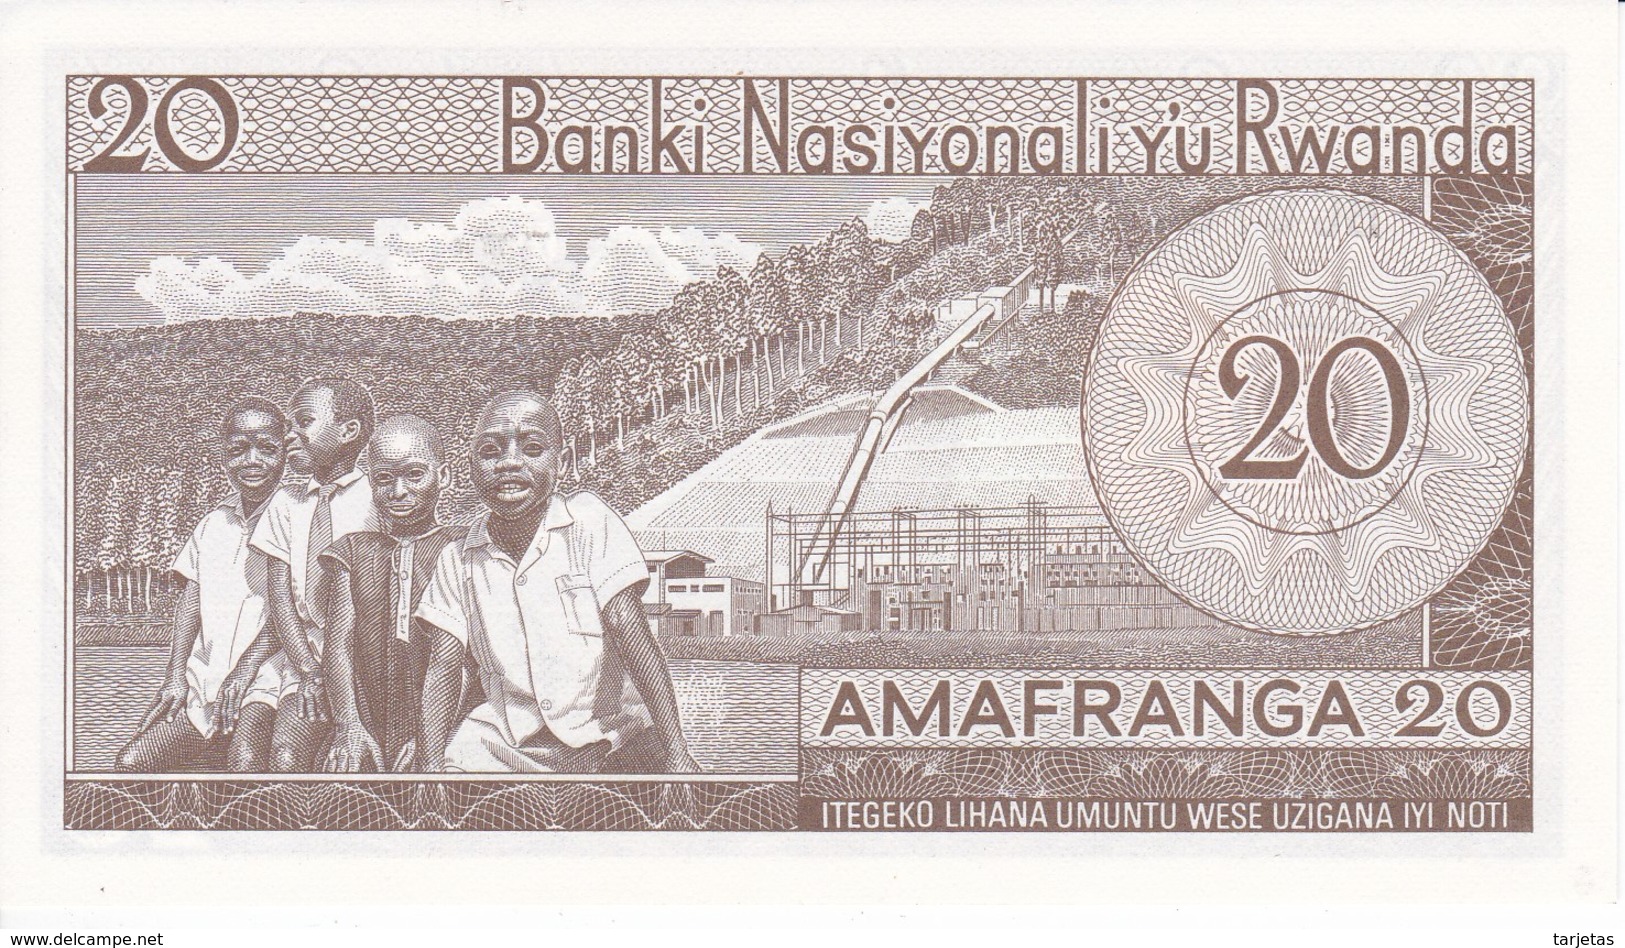 BILLETE DE RWANDA DE 20 FRANCS DEL AÑO 1976  (BANKNOTE) SIN CIRCULAR-UNCIRCULATED - Rwanda